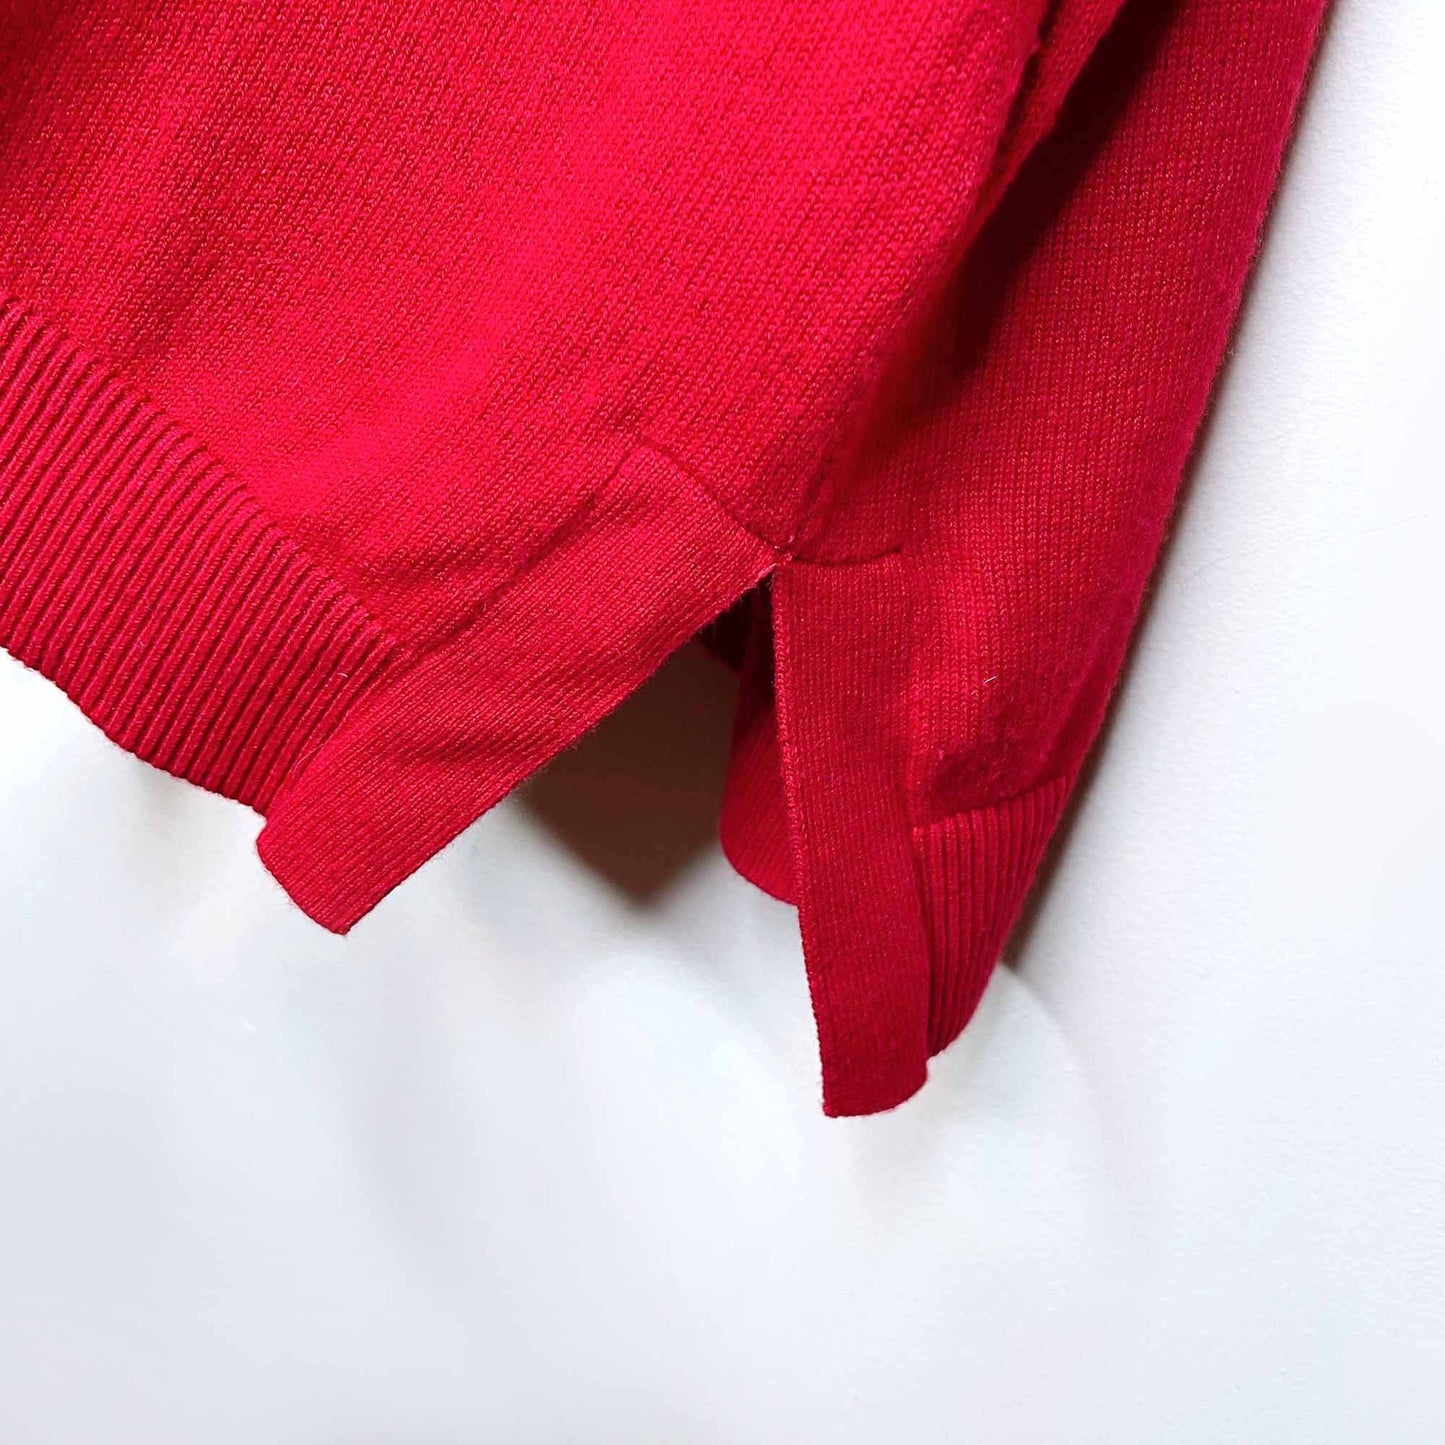 lauren ralph lauren red love sweater - size 2xl